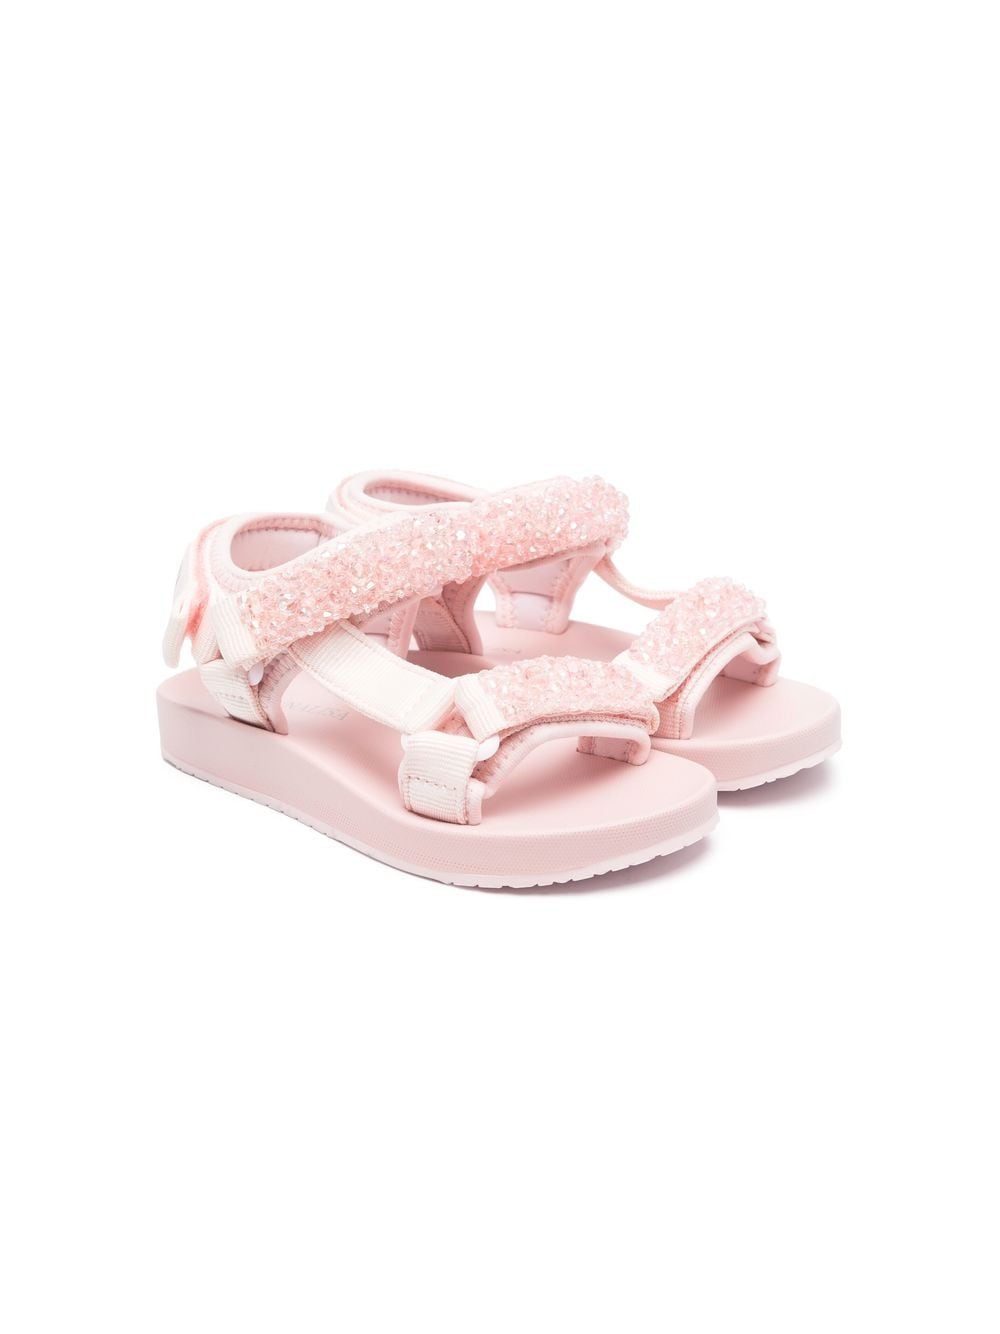 Monnalisa sequin embellished sandals - Pink von Monnalisa